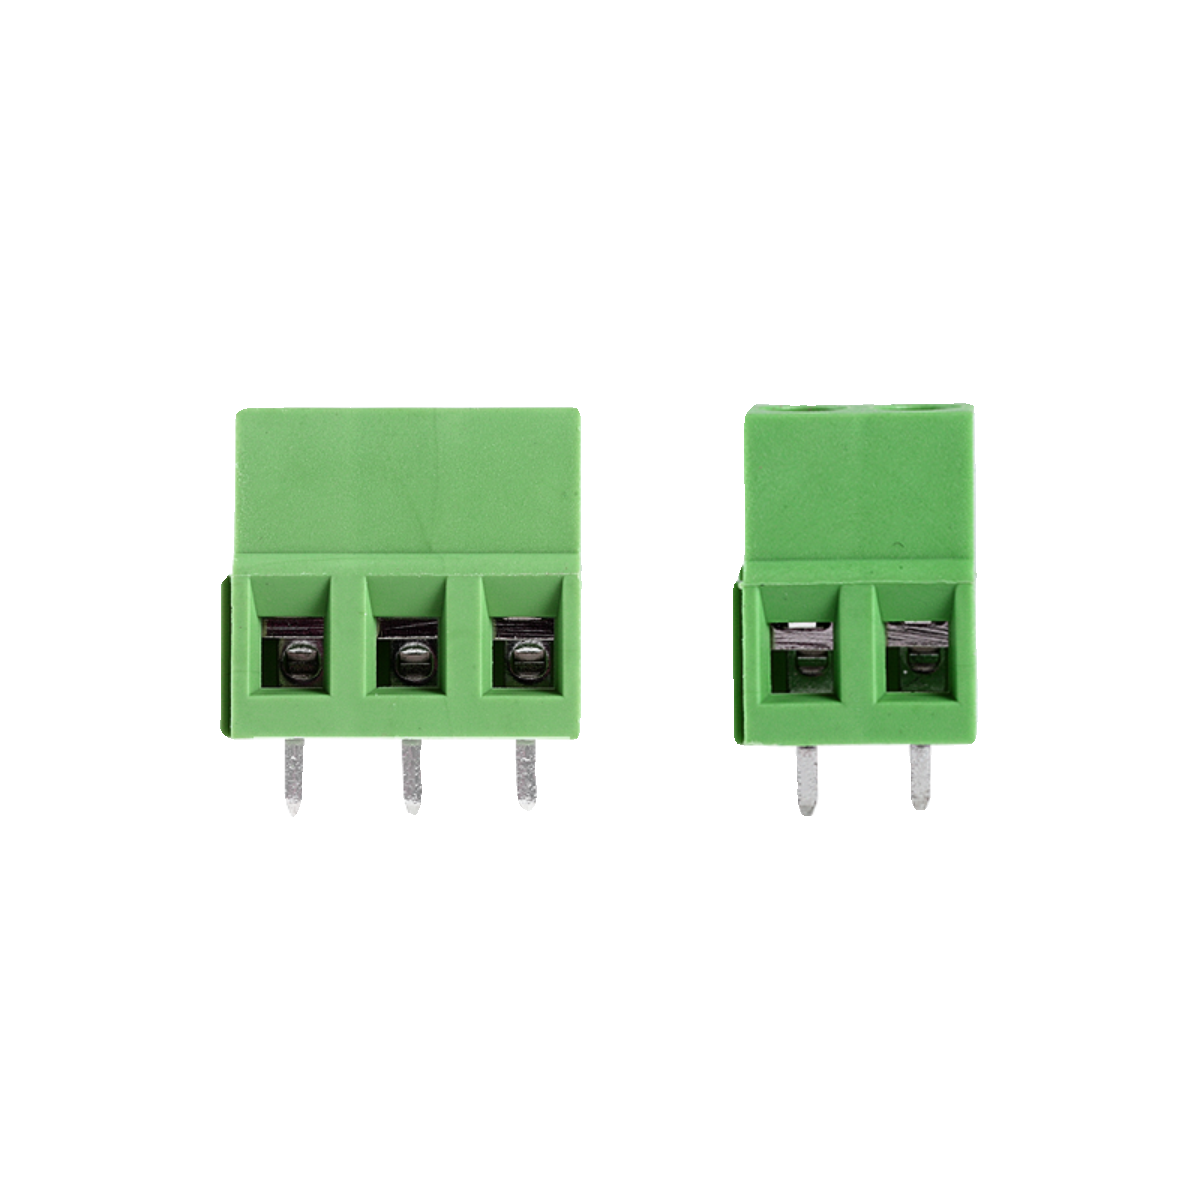 接线端子螺钉式PCB端子128-2P/3P/4P/5P间距5.0MM可拼接2个5个